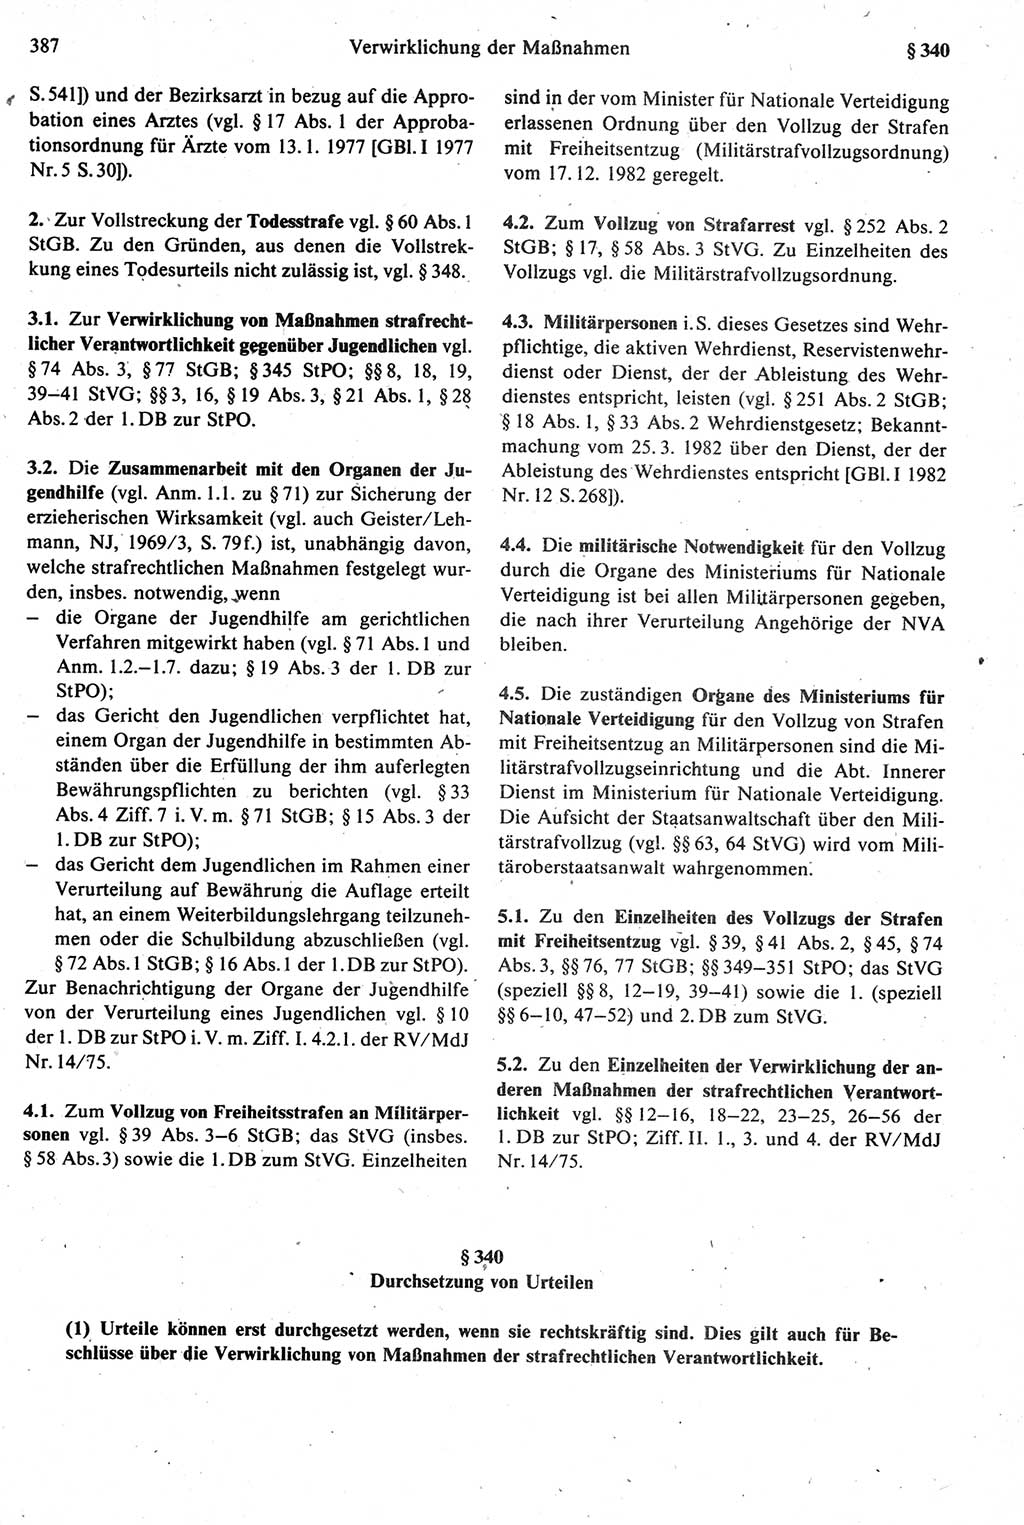 Strafprozeßrecht der DDR [Deutsche Demokratische Republik], Kommentar zur Strafprozeßordnung (StPO) 1987, Seite 387 (Strafprozeßr. DDR Komm. StPO 1987, S. 387)